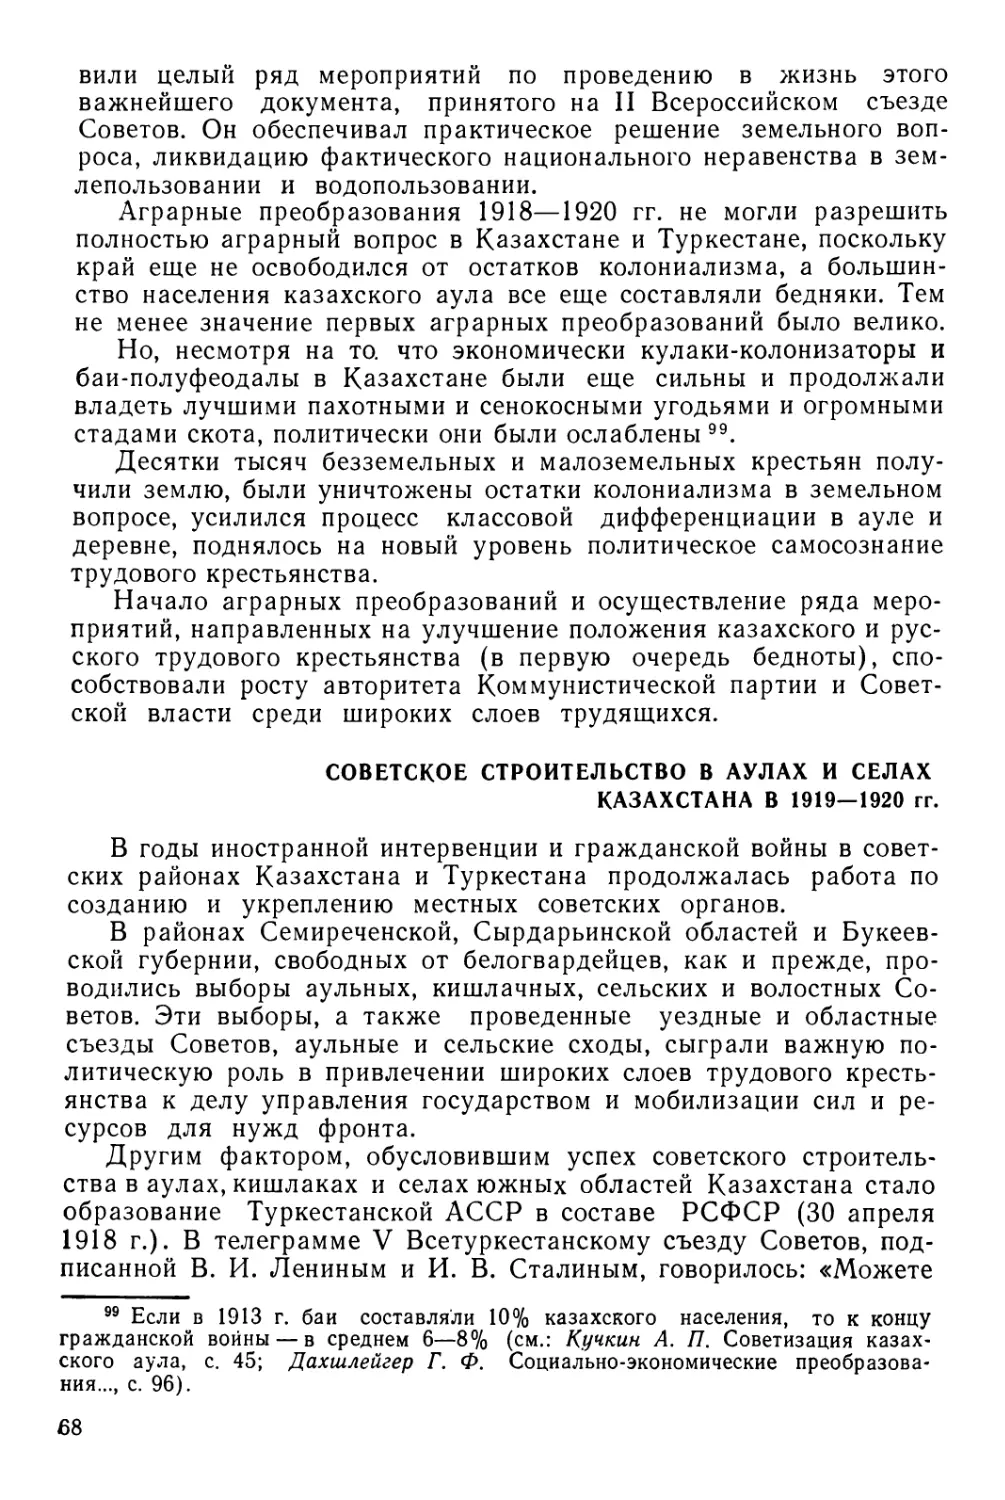 Советское строительство з аулах и селах Казахстана в 1918—1920 гг